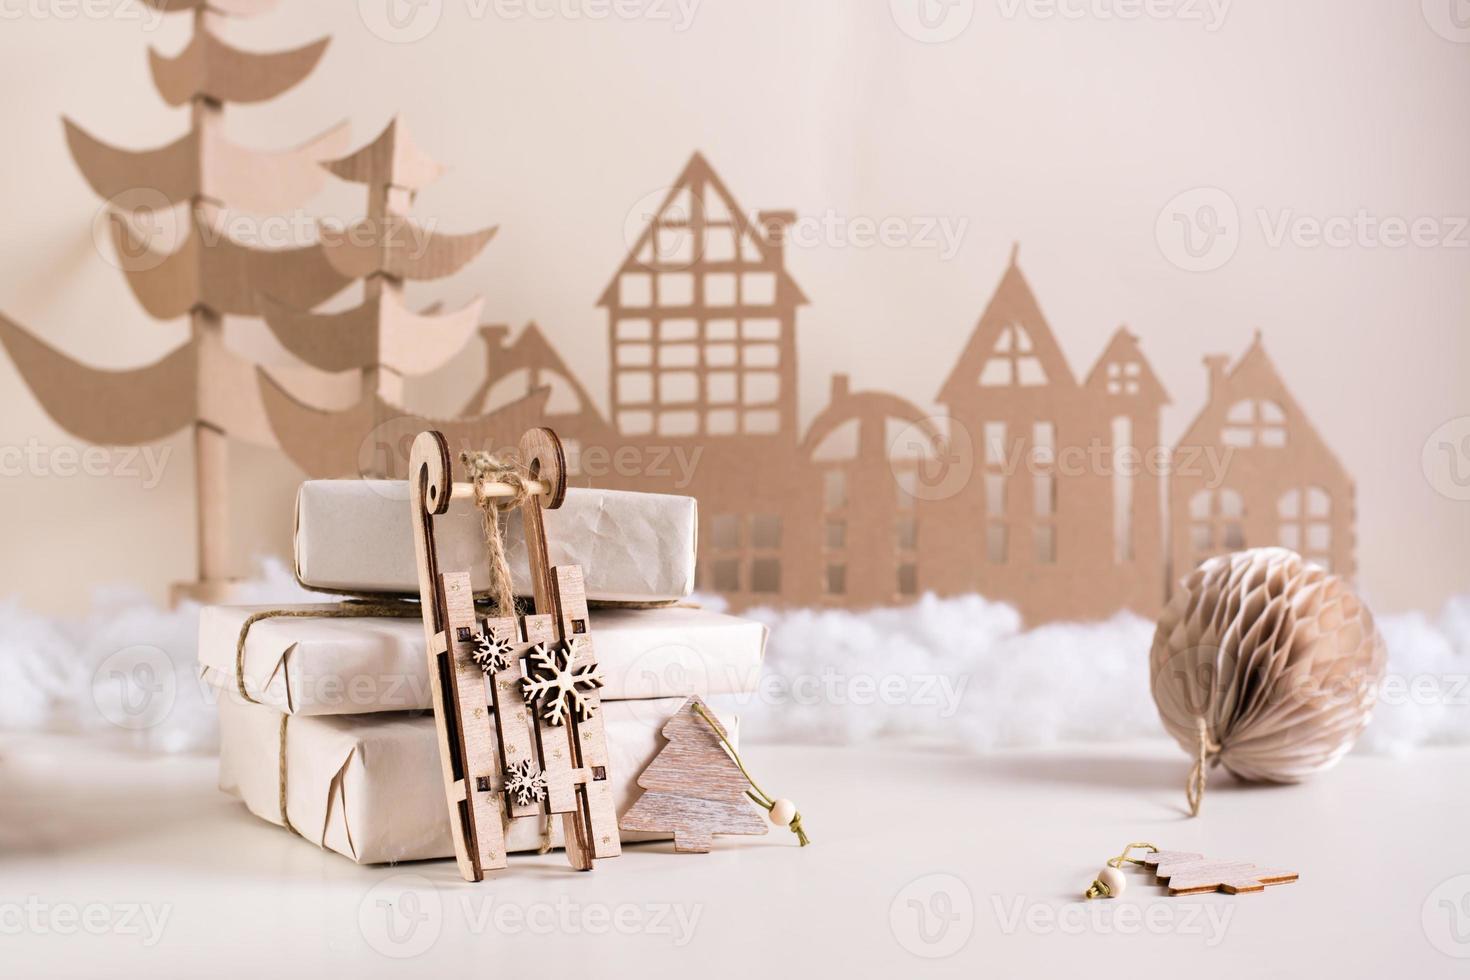 bricolage décoration de noël - luge en bois près d'une pile de cadeaux, d'un arbre en carton et d'une maison. Fait main photo